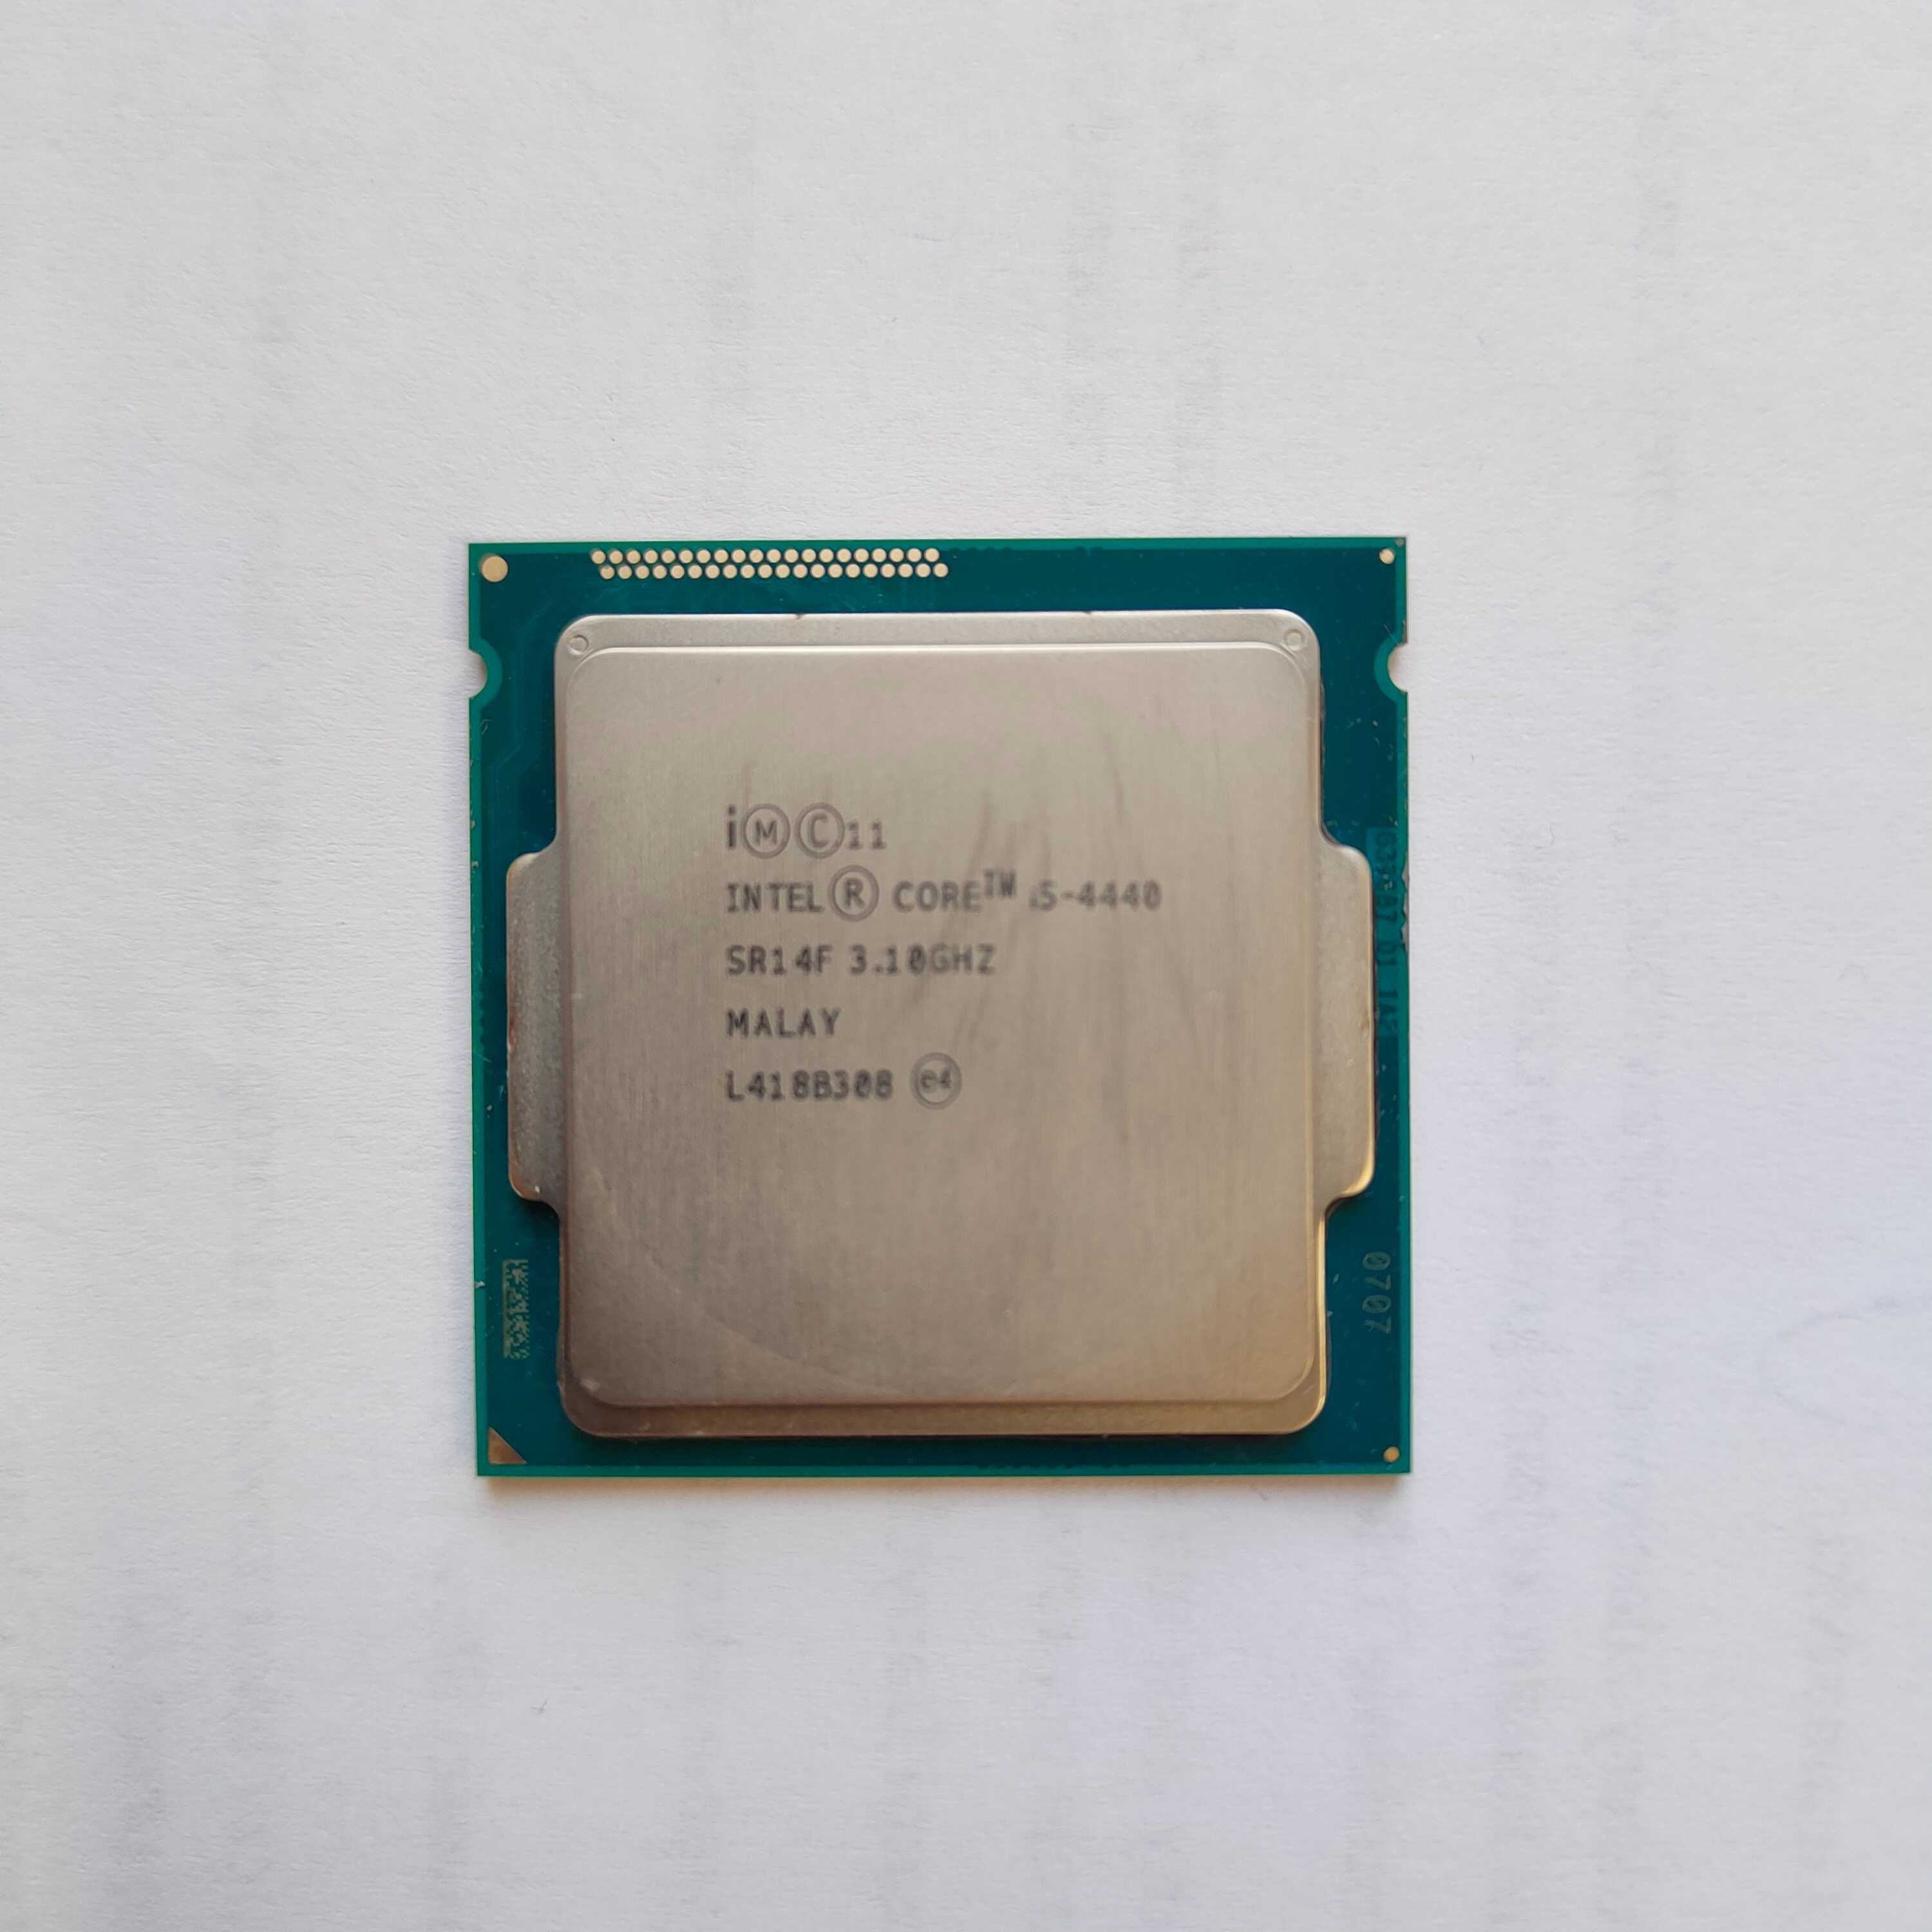 Procesor Intel i5-4440 4 x 3,1 GHz